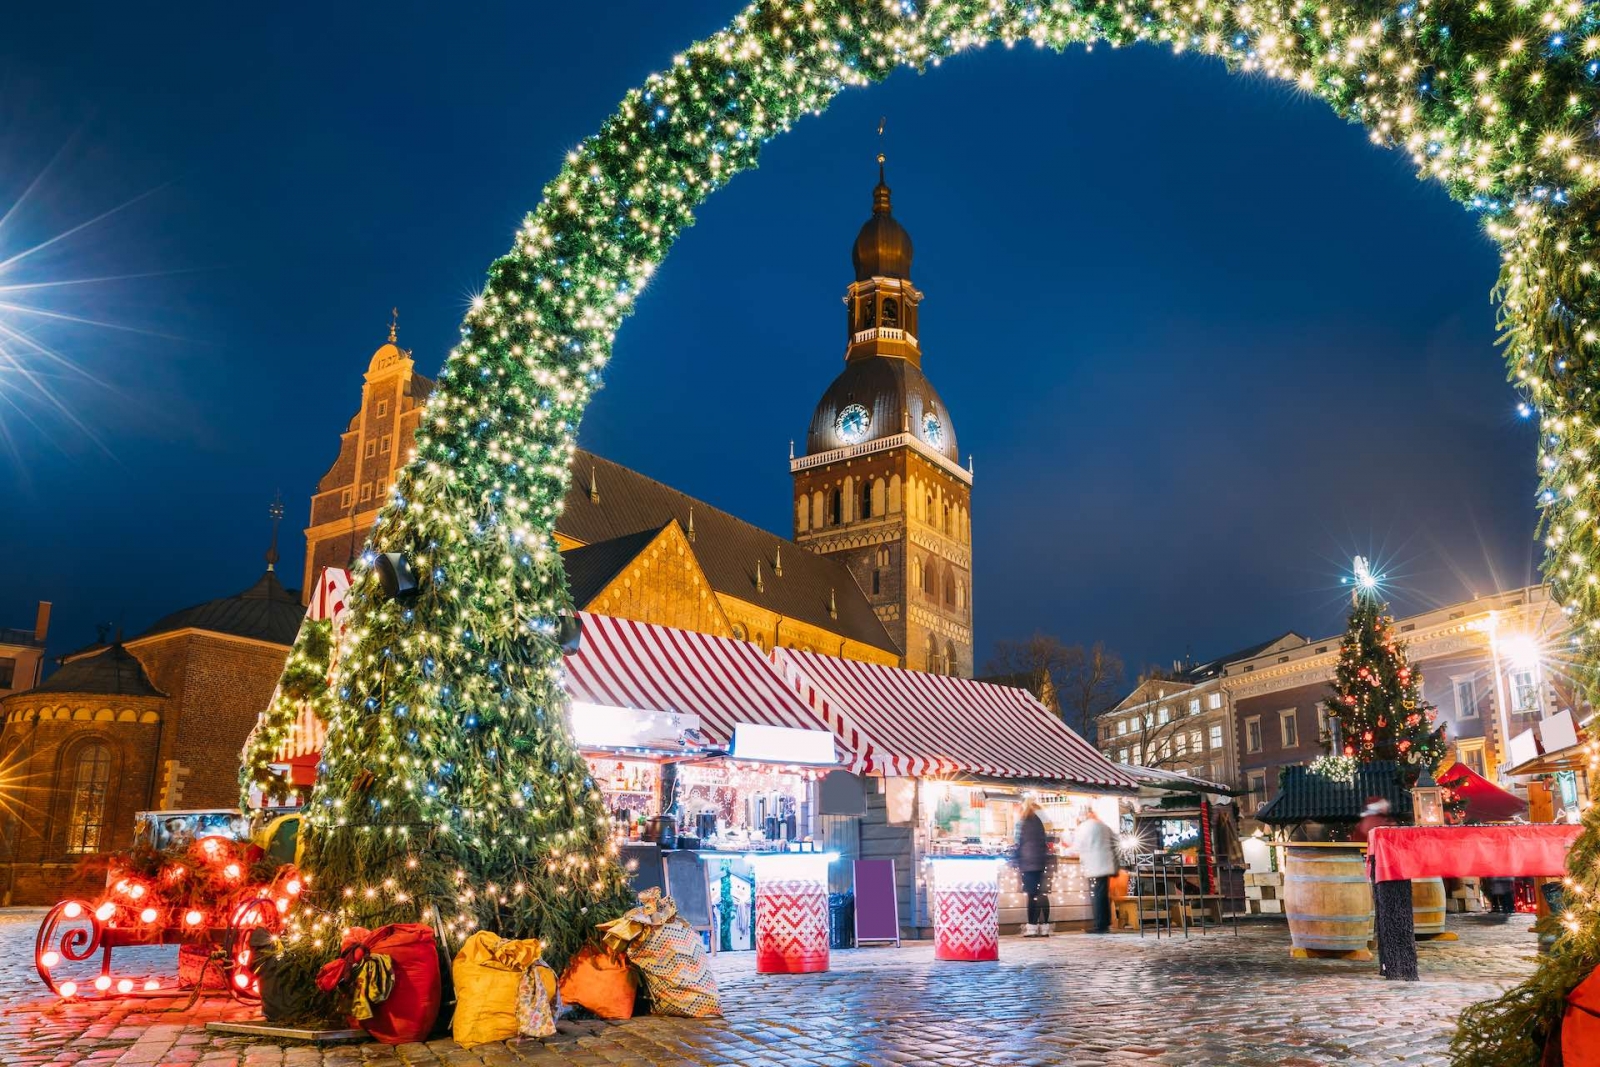 Riga, Lettland.  Weihnachtsmarkt am Domplatz mit Rigaer Dom.  Weihnachtsbaum und Handelshäuser